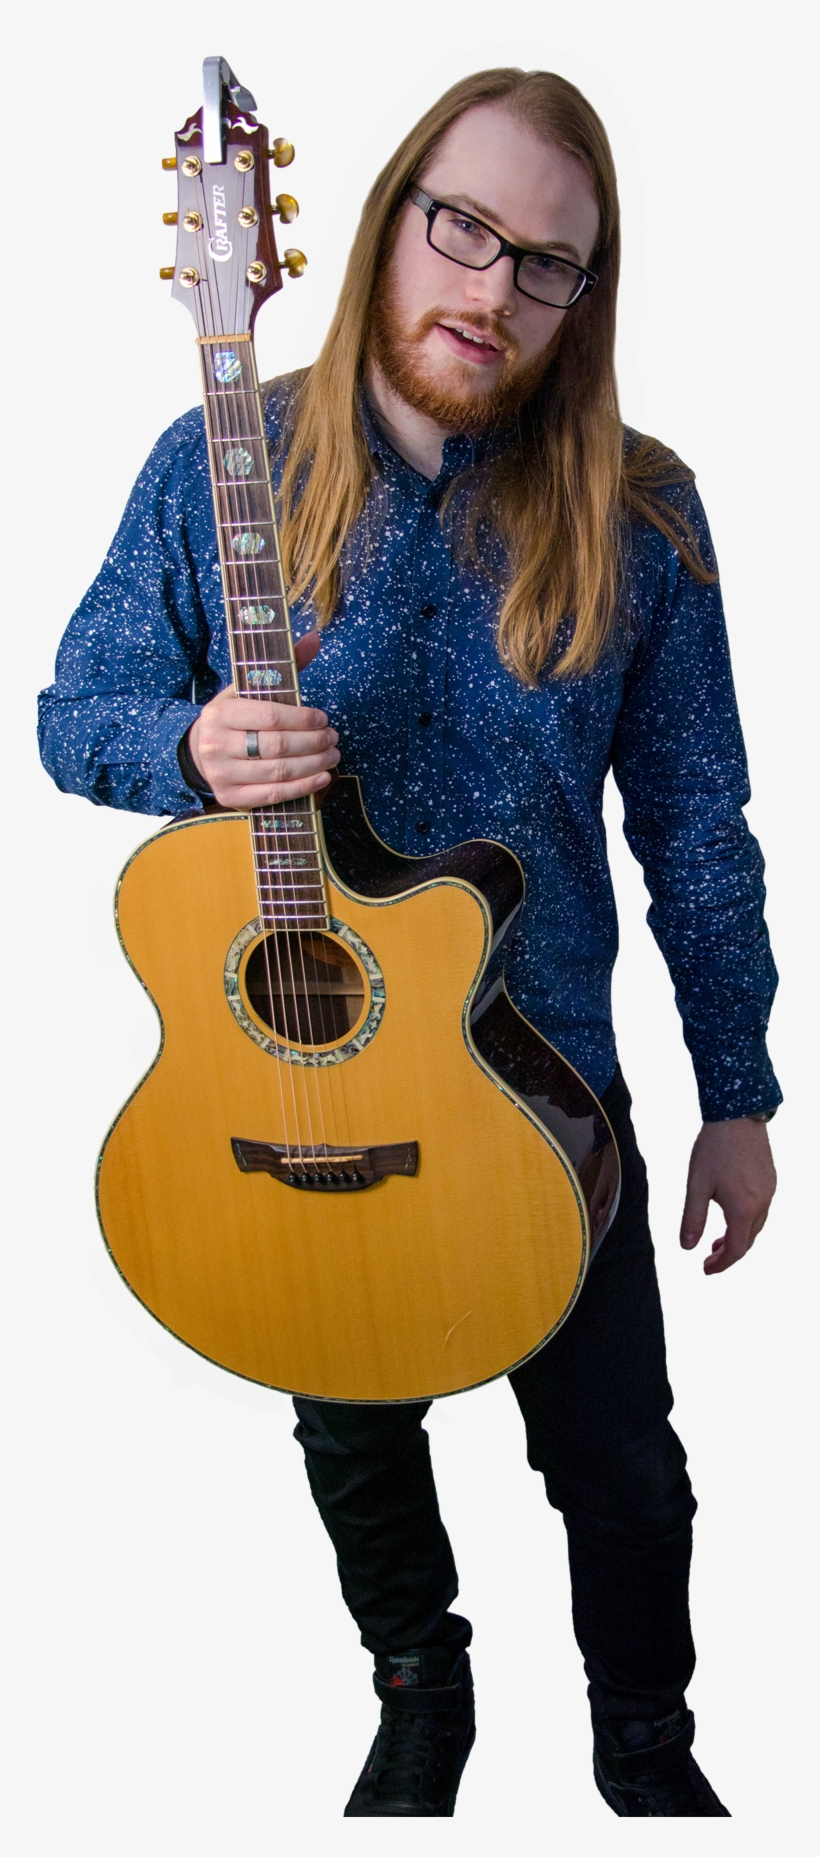 Matt Guitar Teaching Promo - Acoustic Guitar, transparent png #8489874